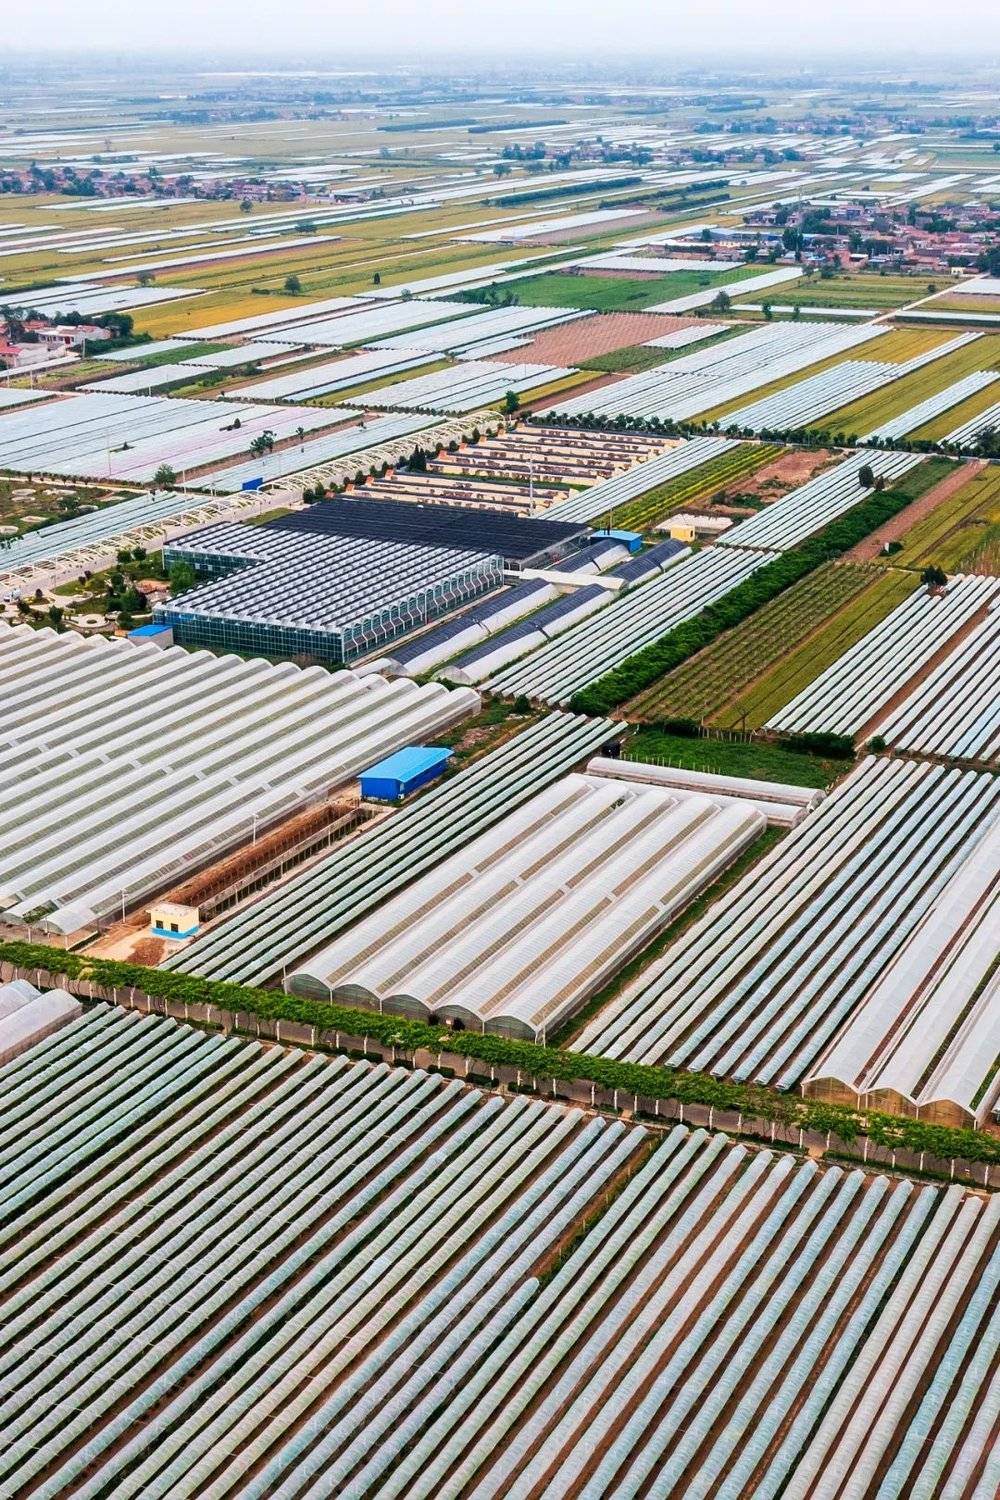 ▲ 占地20万亩的渭南市葡萄产业现代园区，是葡萄的重要产地。 摄影/李平安